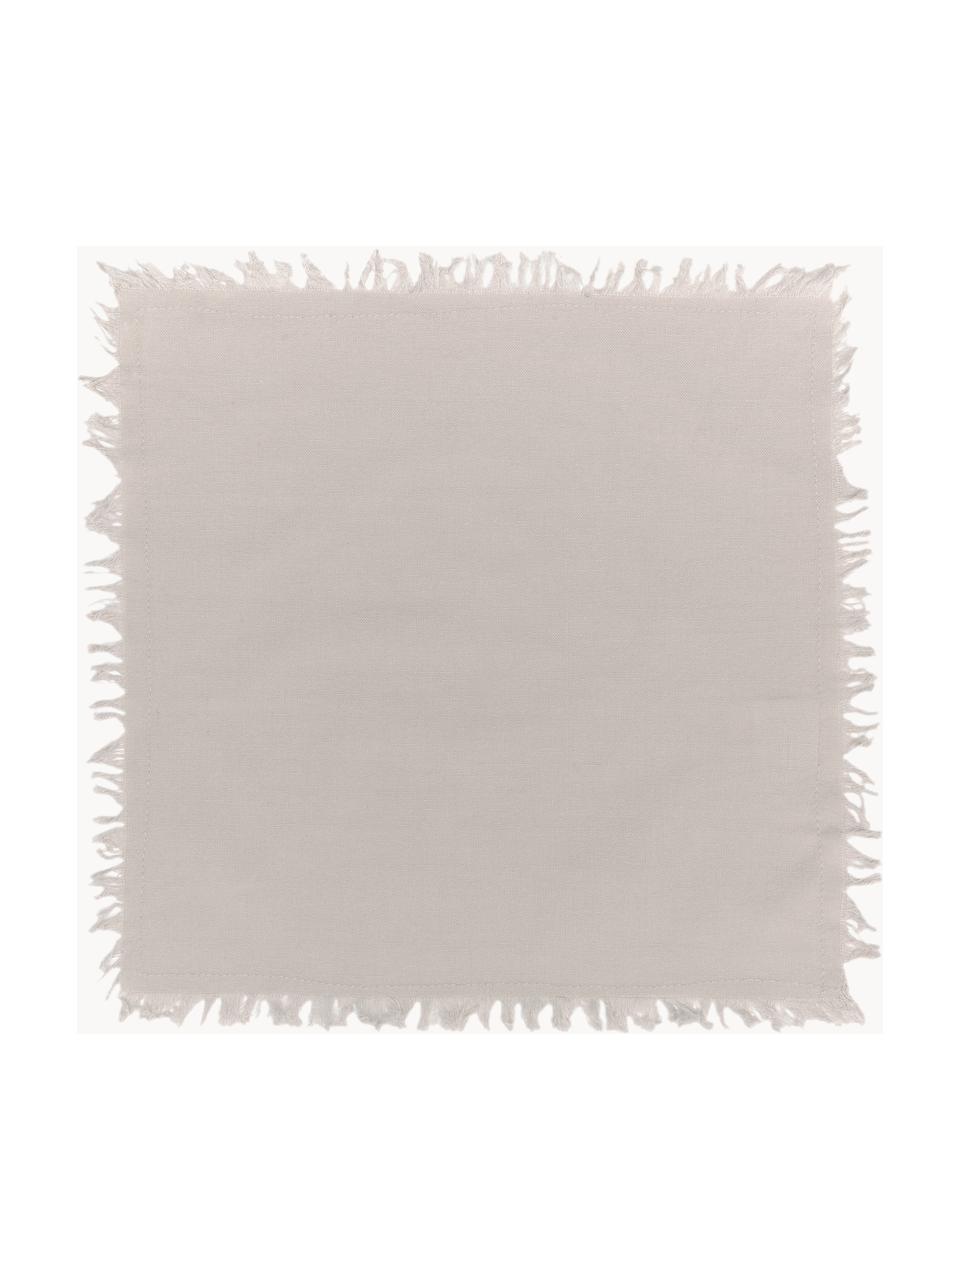 Serviettes de table à franges Nalia, 2 pièces, Coton, Beige clair, larg. 35 x long. 35 cm